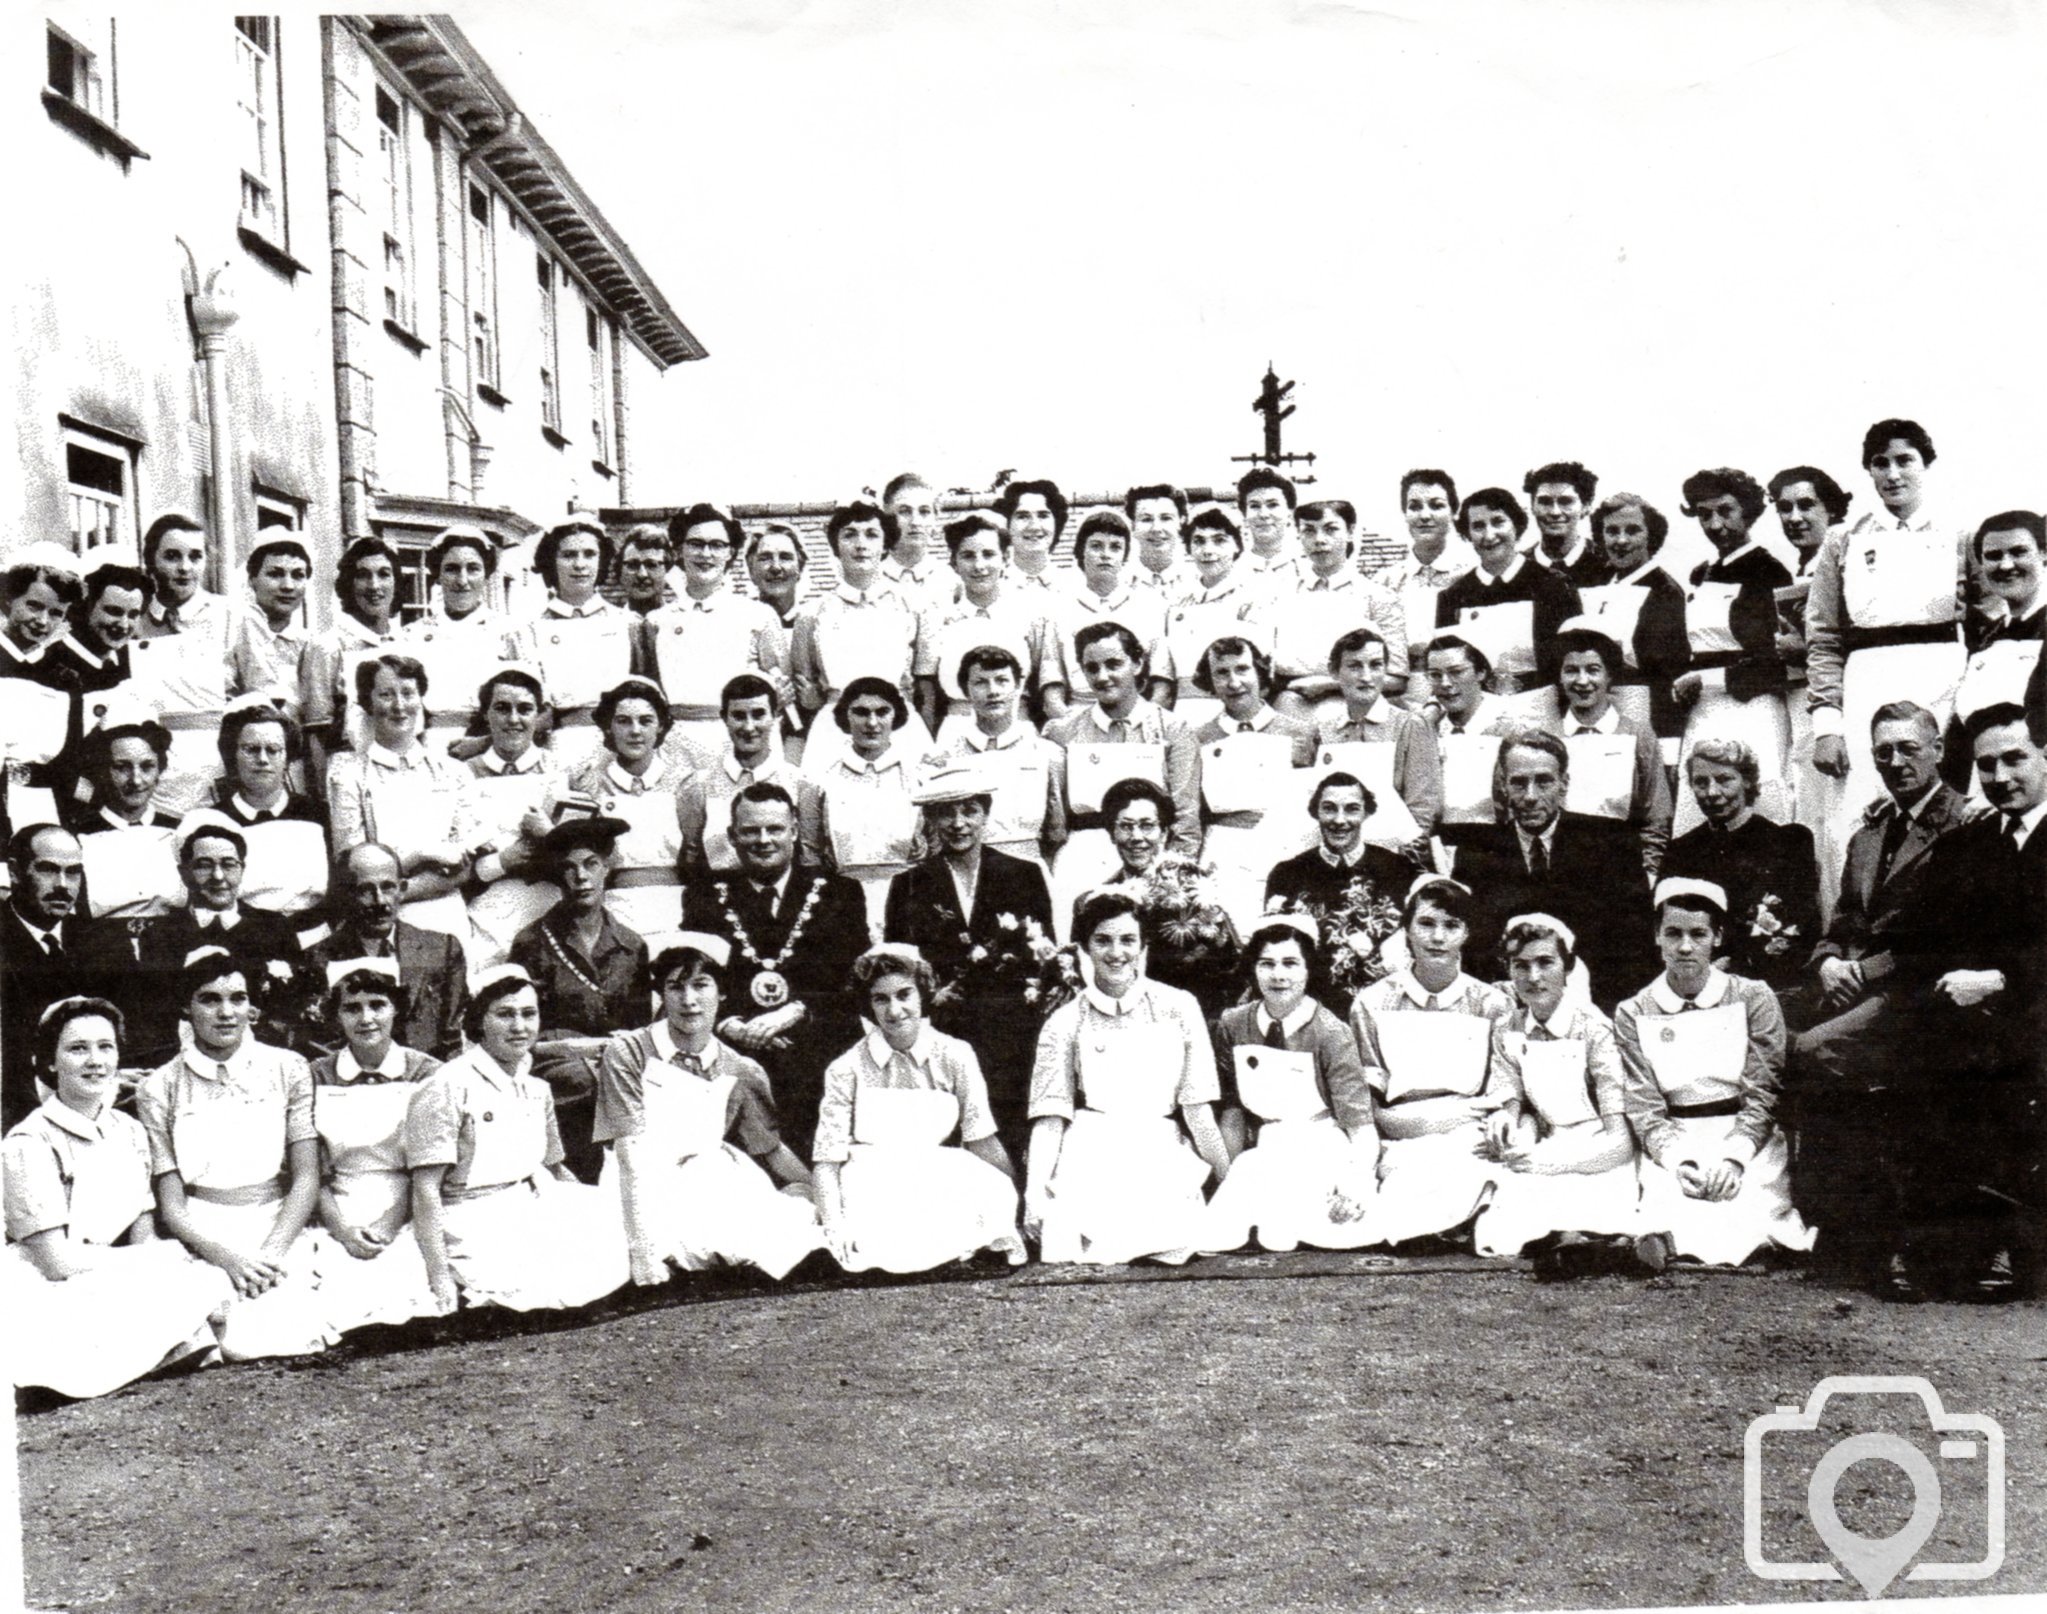 West Cornwall Hospital Trainee Nurses